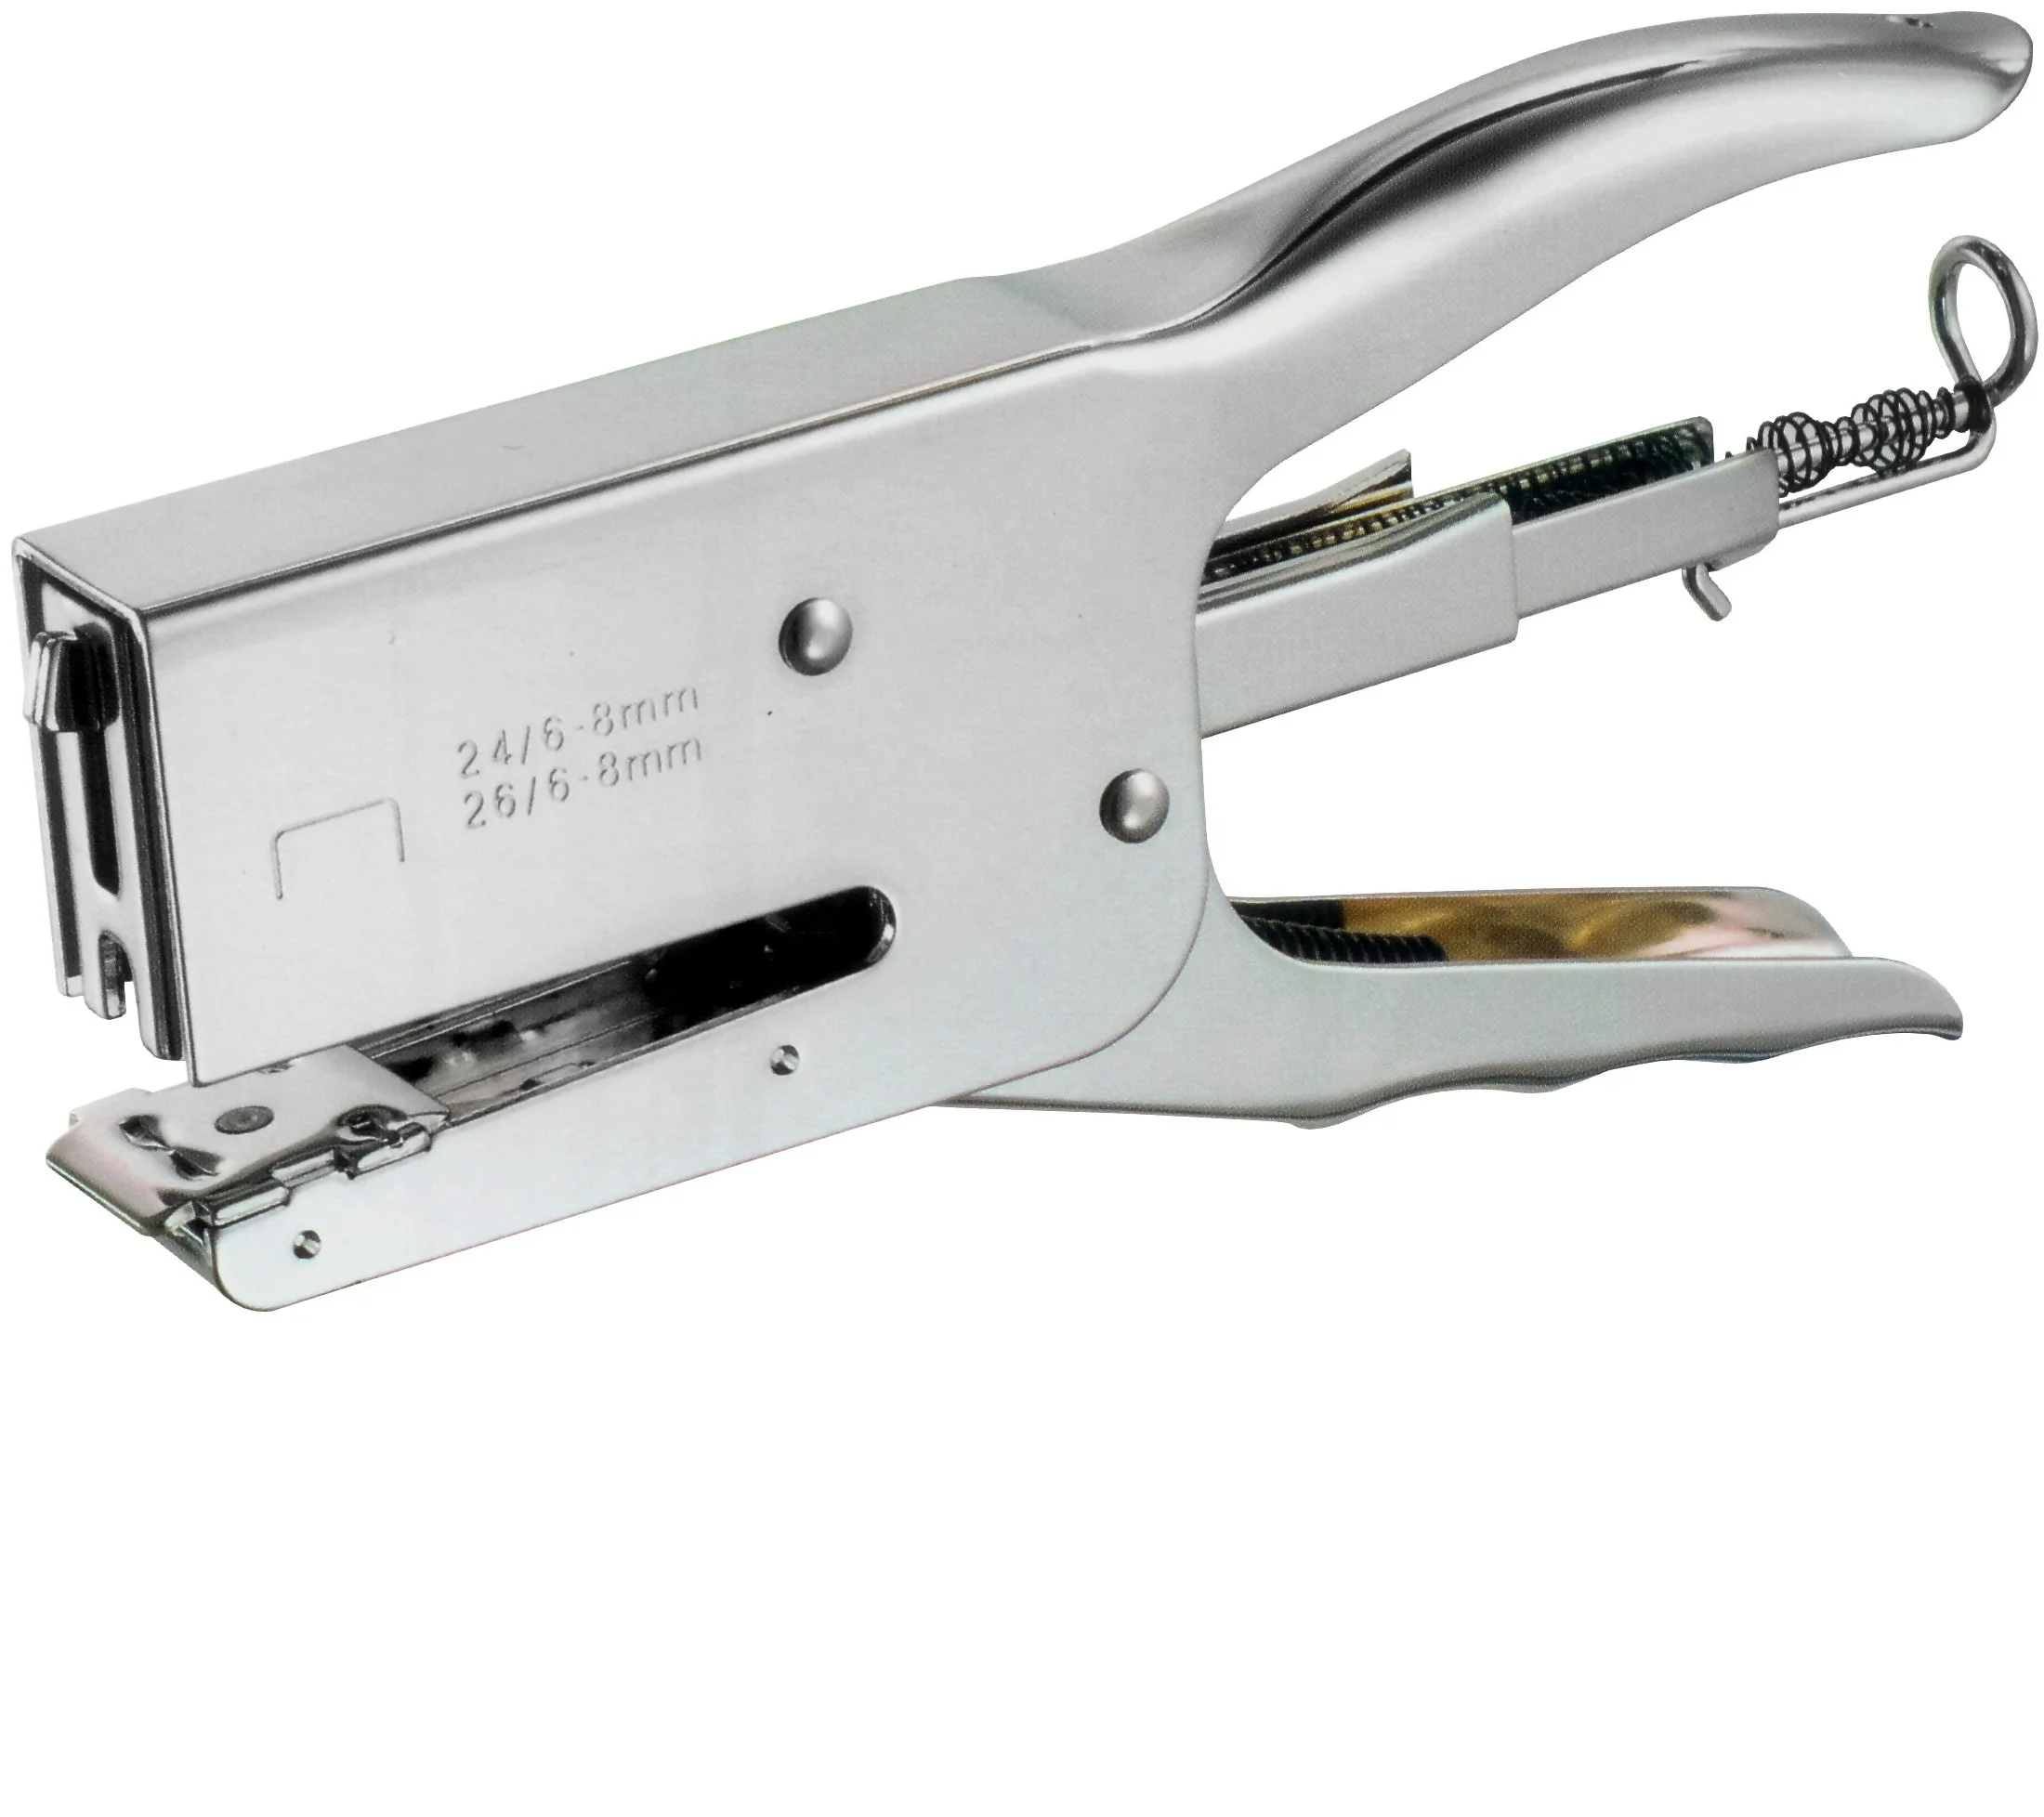 industrial stapler